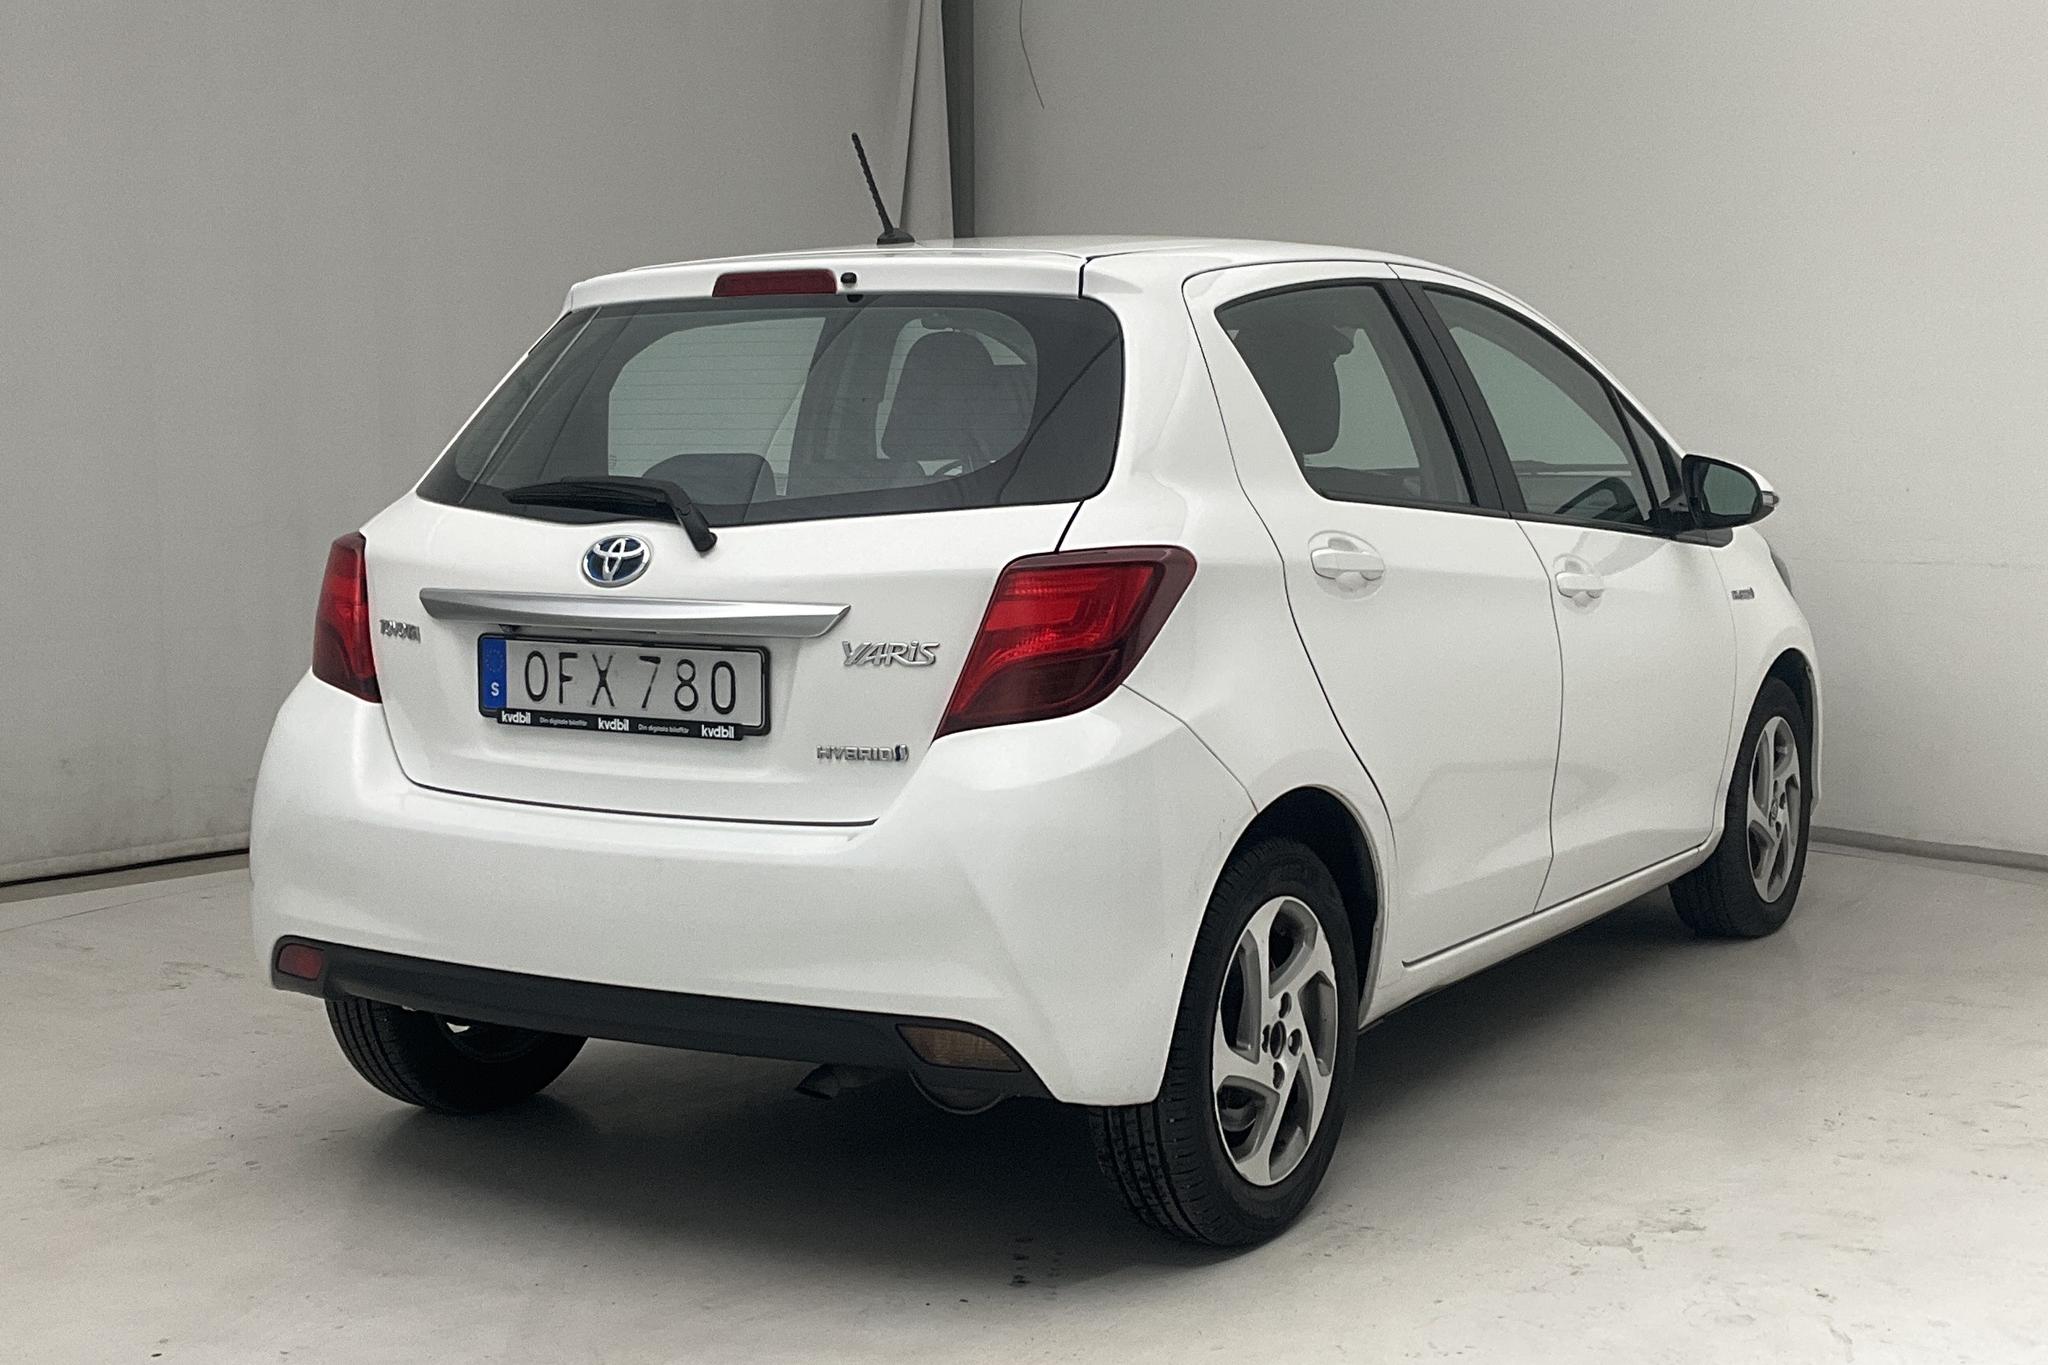 Toyota Yaris 1.5 HSD 5dr (75hk) - 178 340 km - Automatic - white - 2016